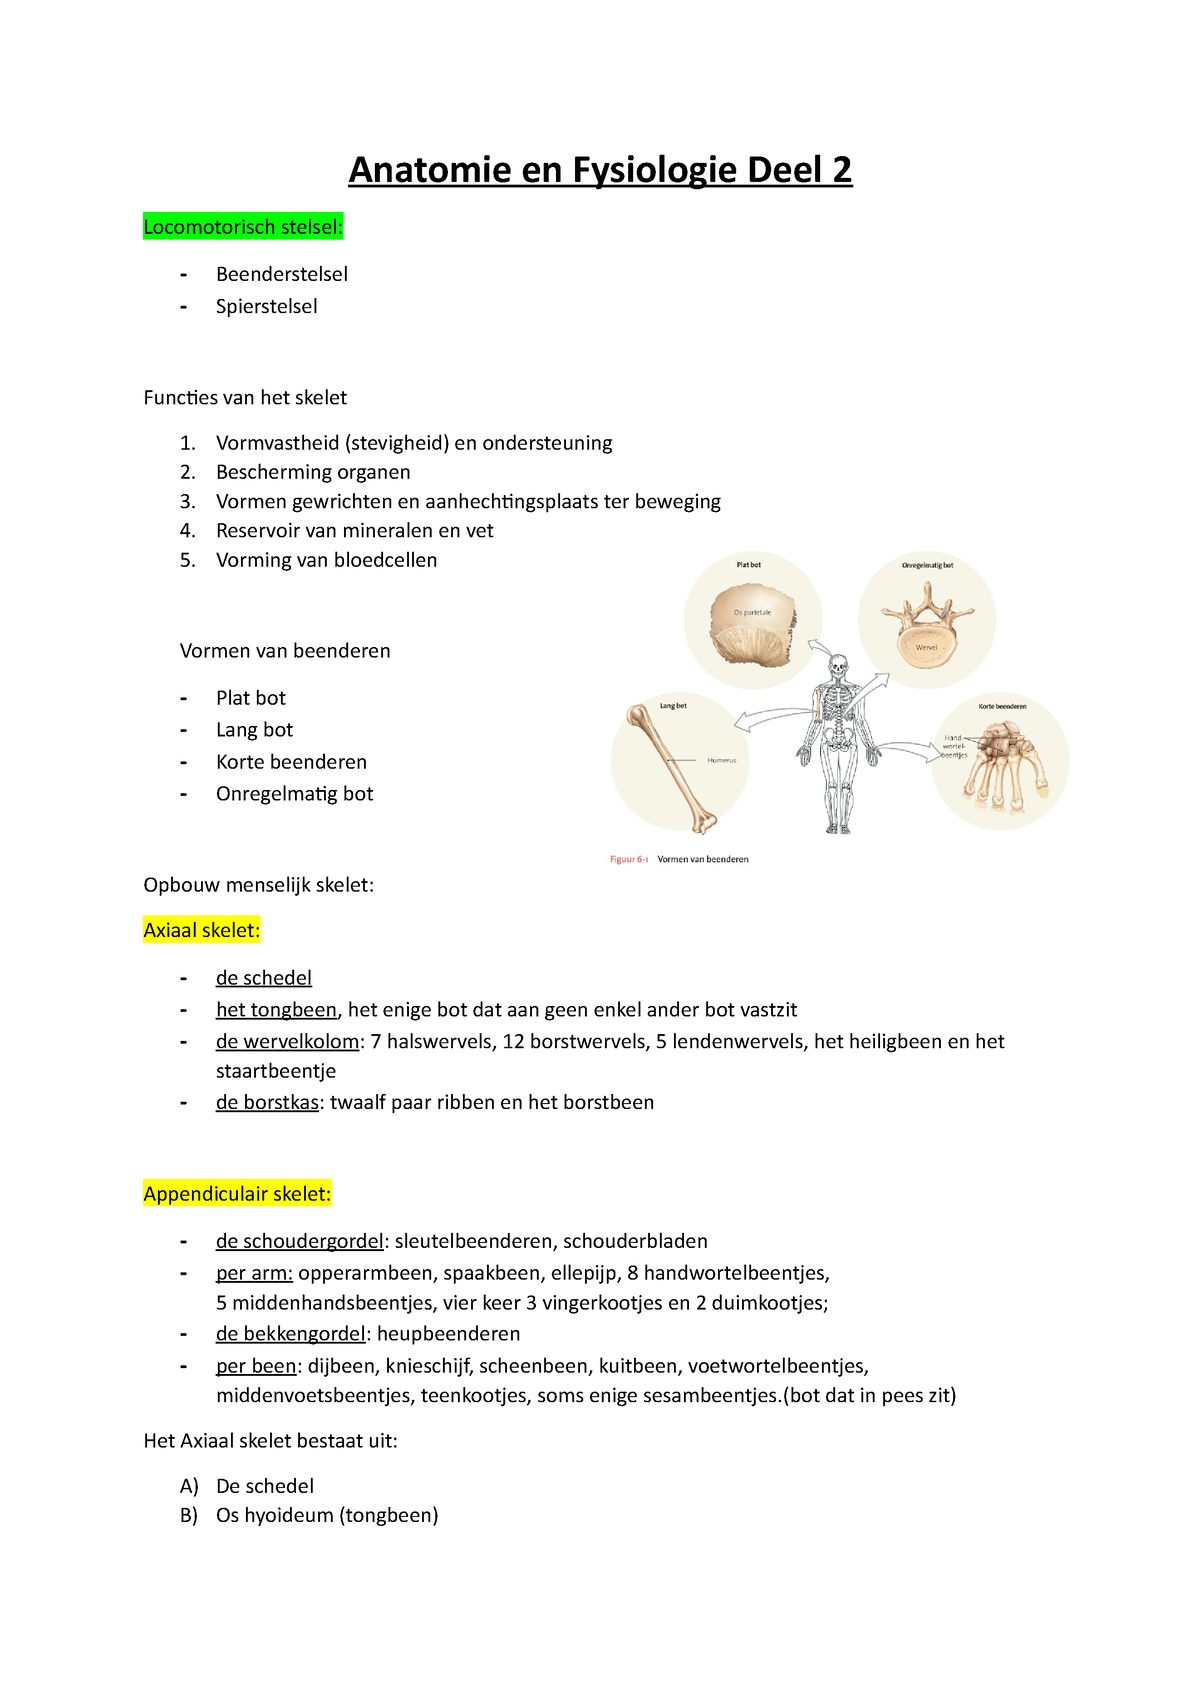 Anatomie En Fysiologie Deel 2 Beenderstelsel Anatomie En Fysiologie